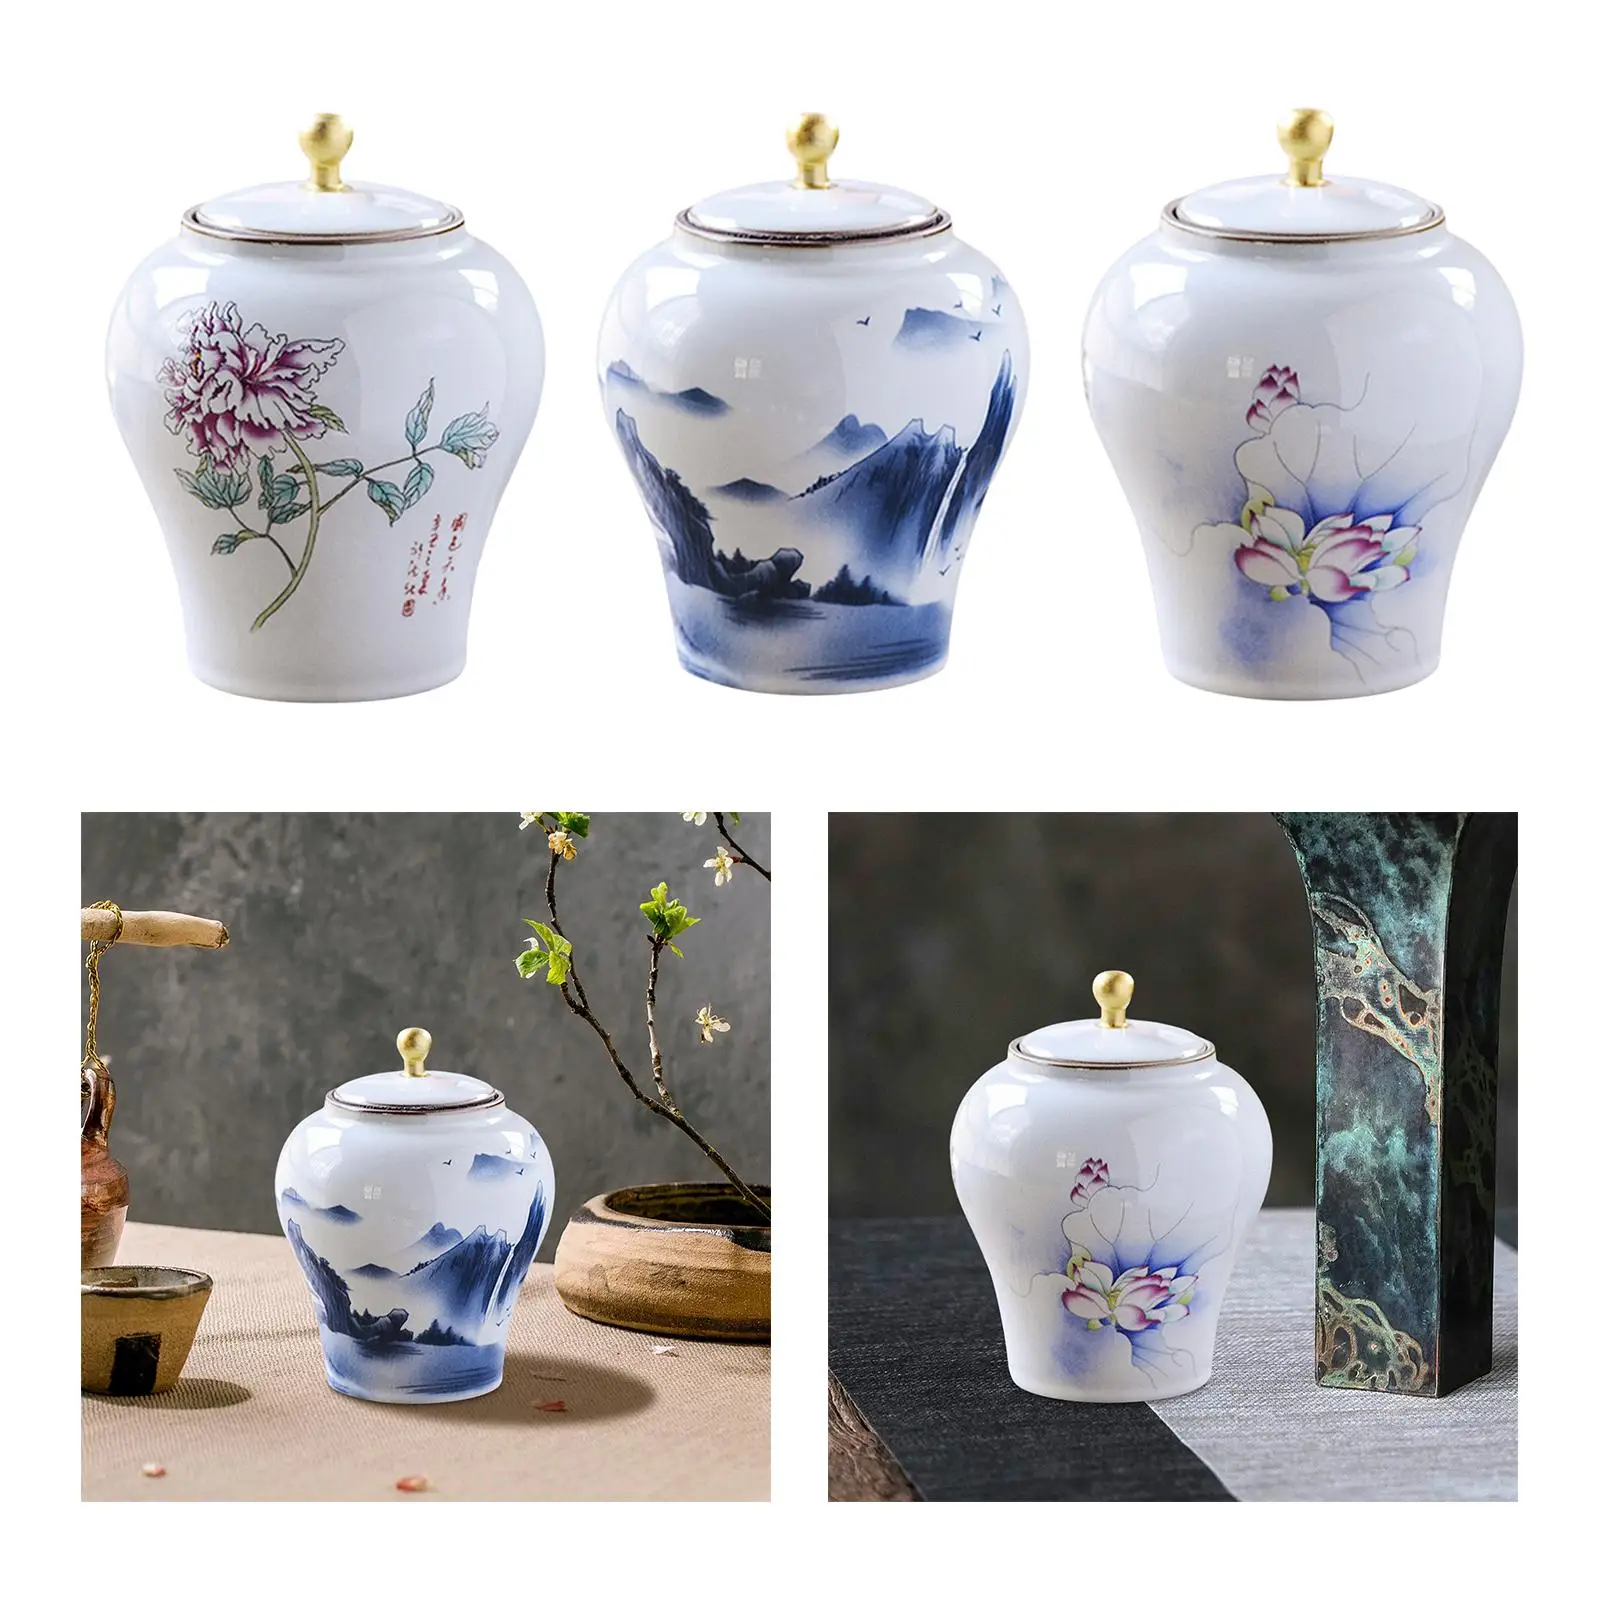 Ginger Jar Vase Display Ceramic Flower Vase for Fireplace Dining Room Gifts